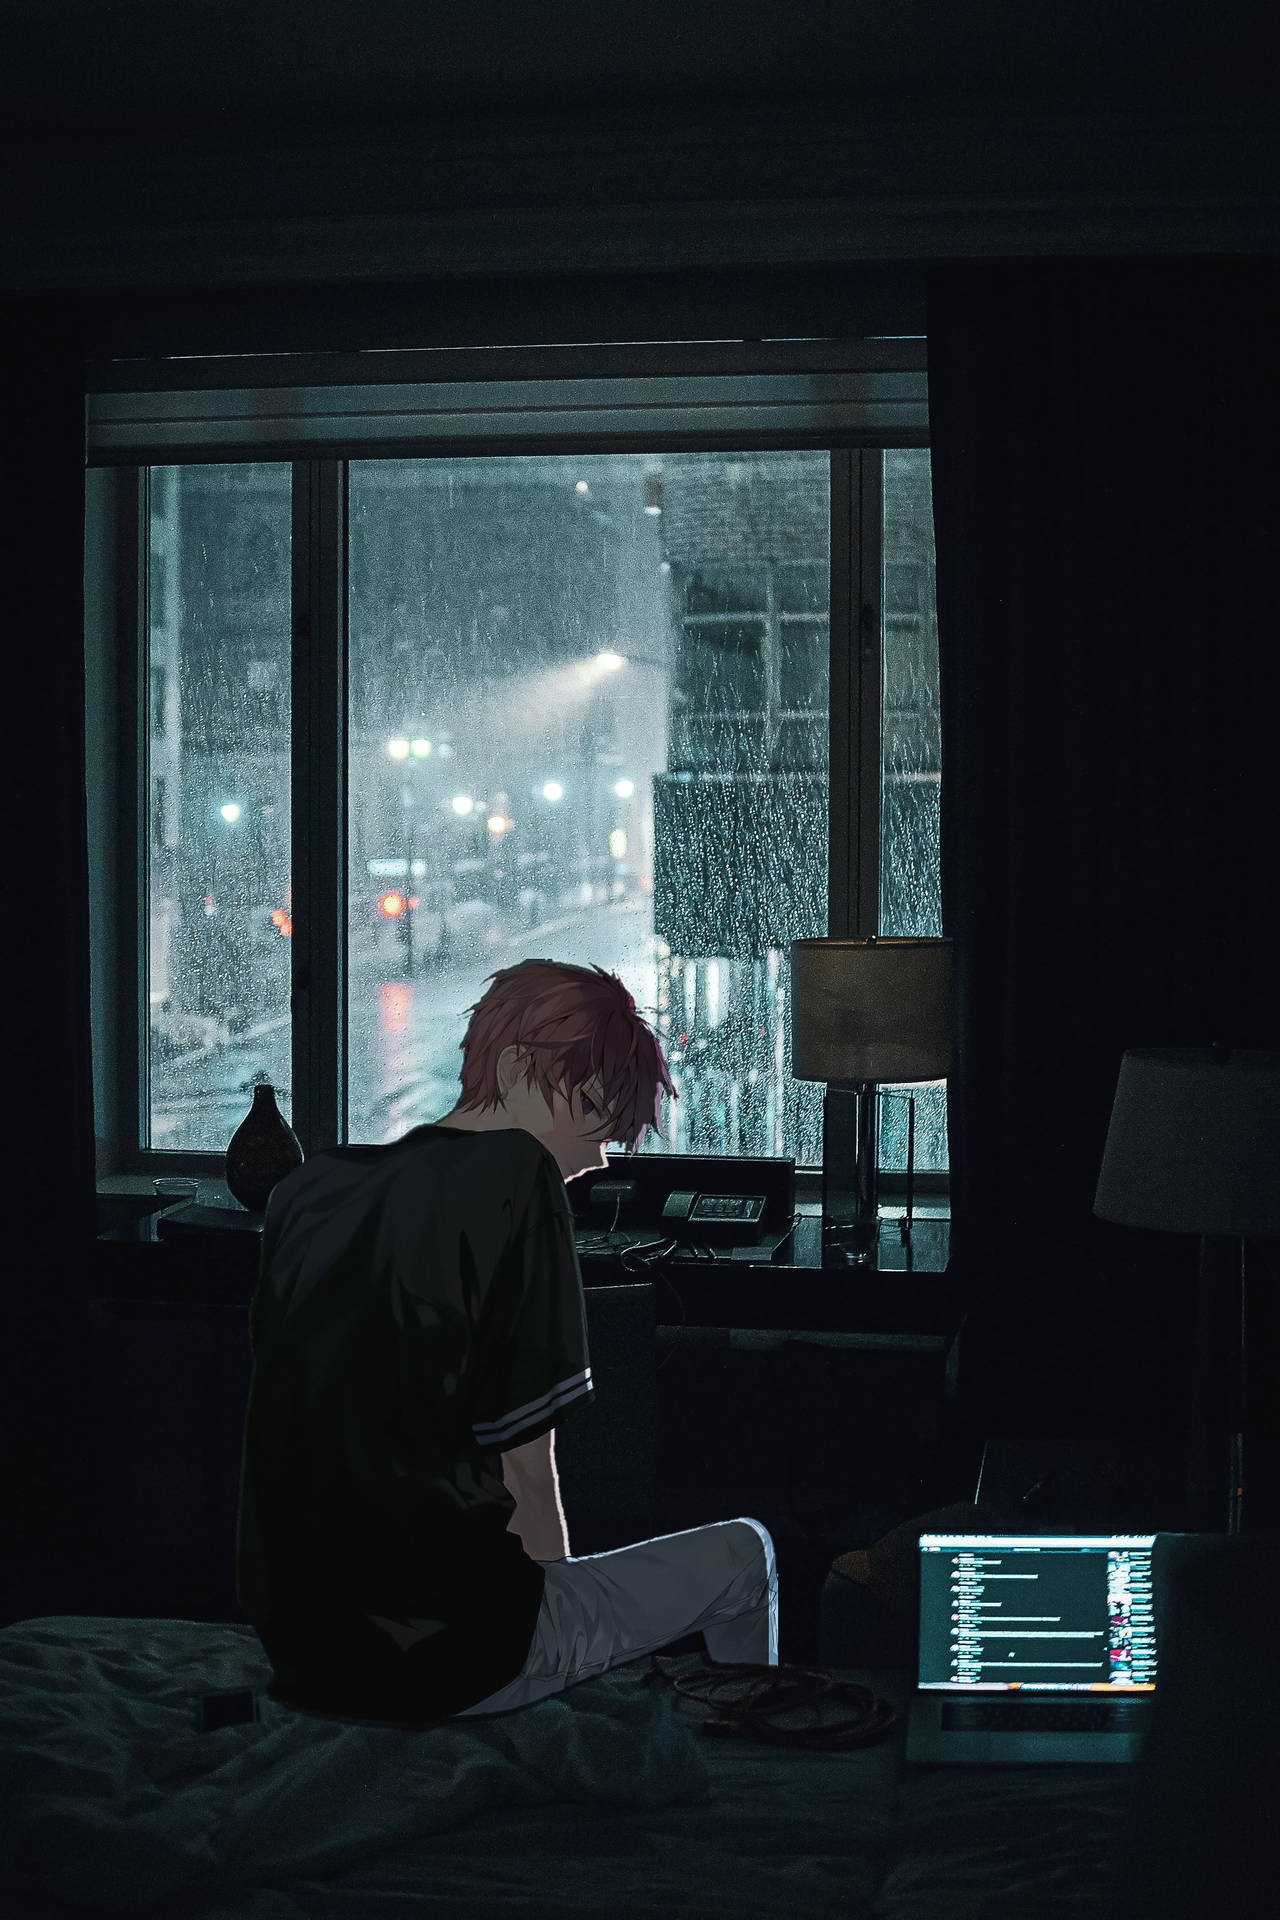 Sad Anime On Dark Room Aesthetic Background